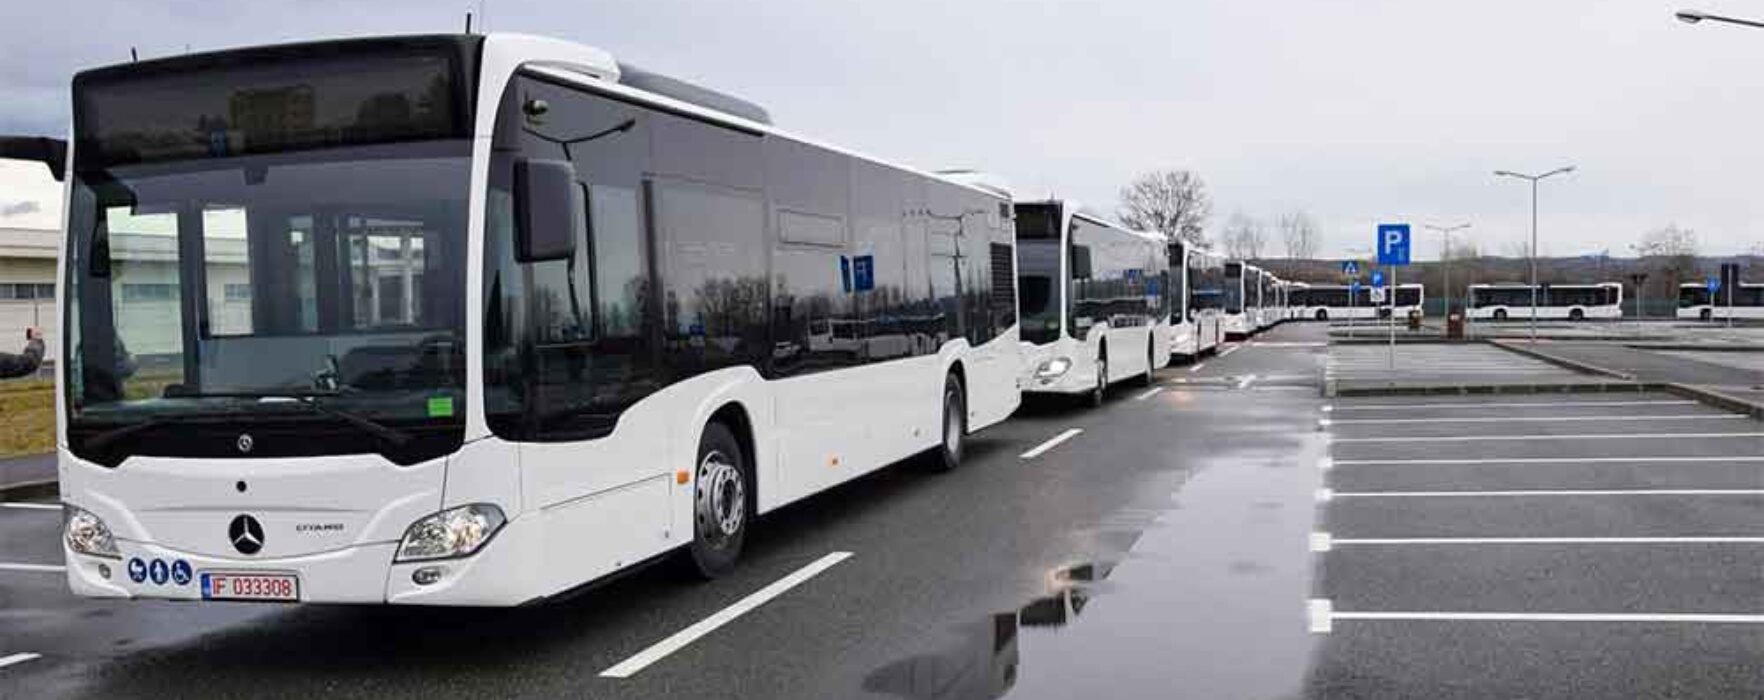 “Modernizarea transportului public la nivelul zonei urbane funcționale Târgoviște prin achiziția de autobuze ecologice – etapa I”